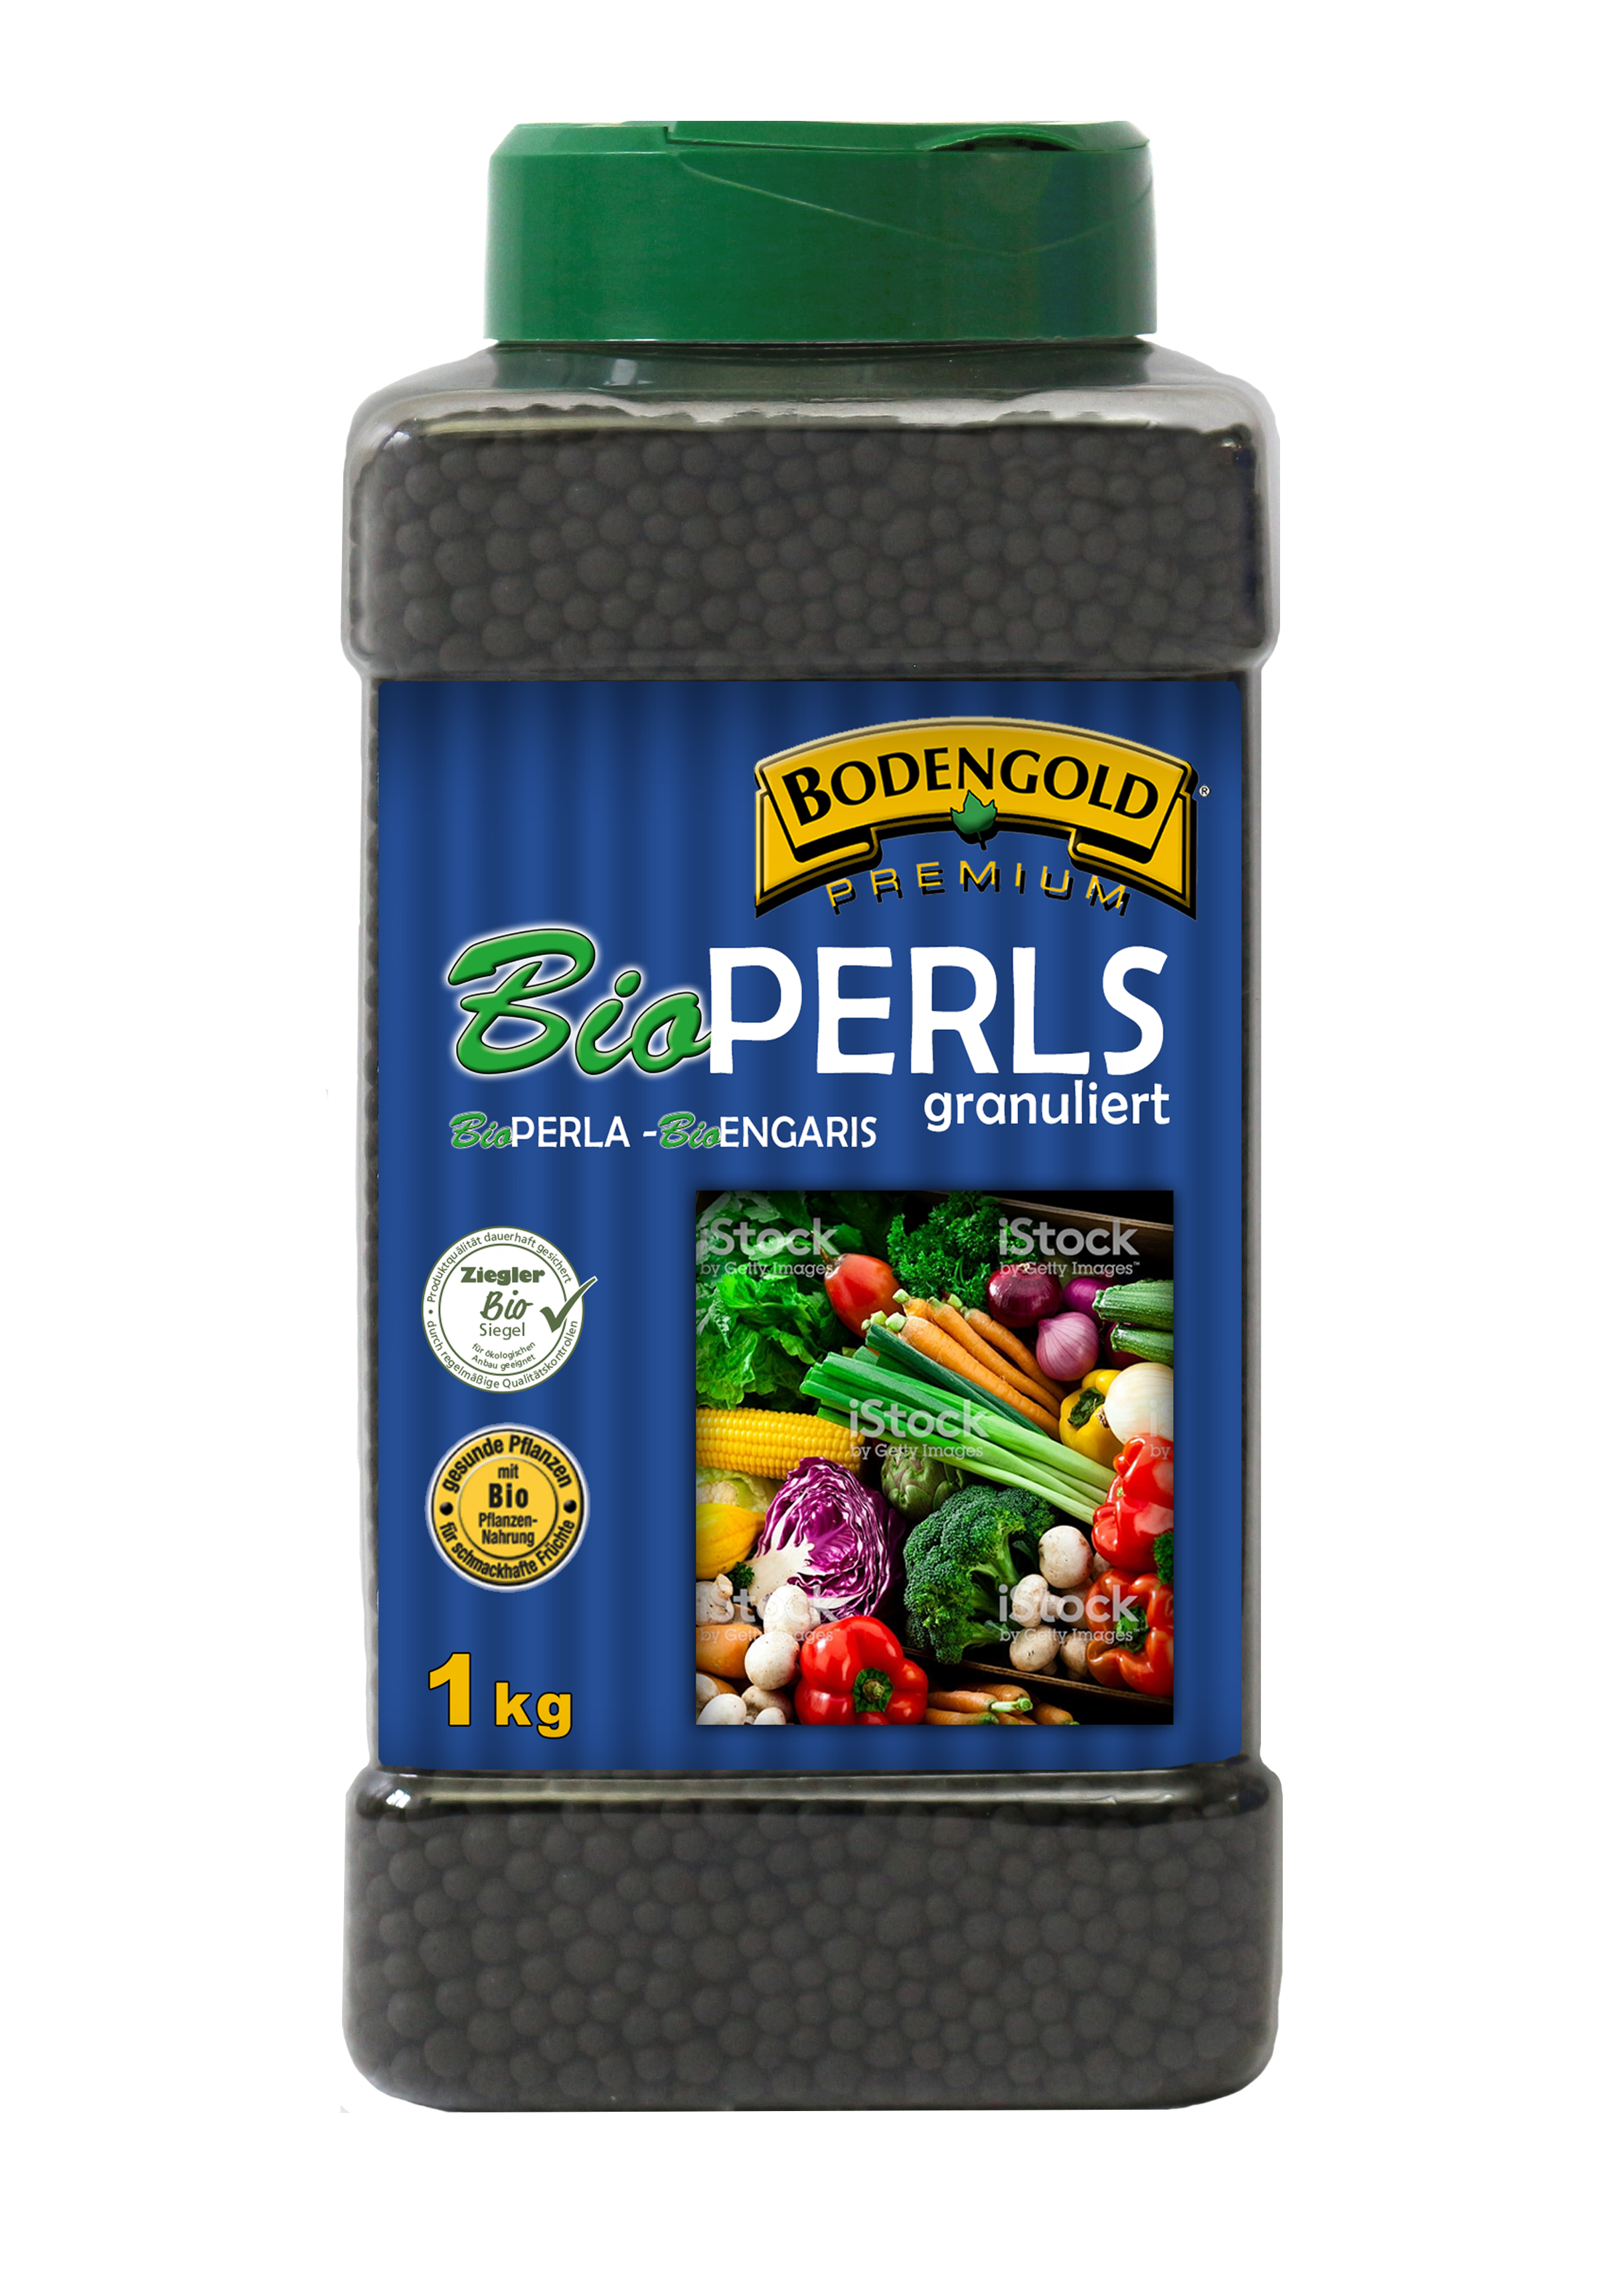 GREGOR ZIEGLER GMBH Bodengold BIO-Perls 1kg rein organisch und pflanzlich 12+1+3